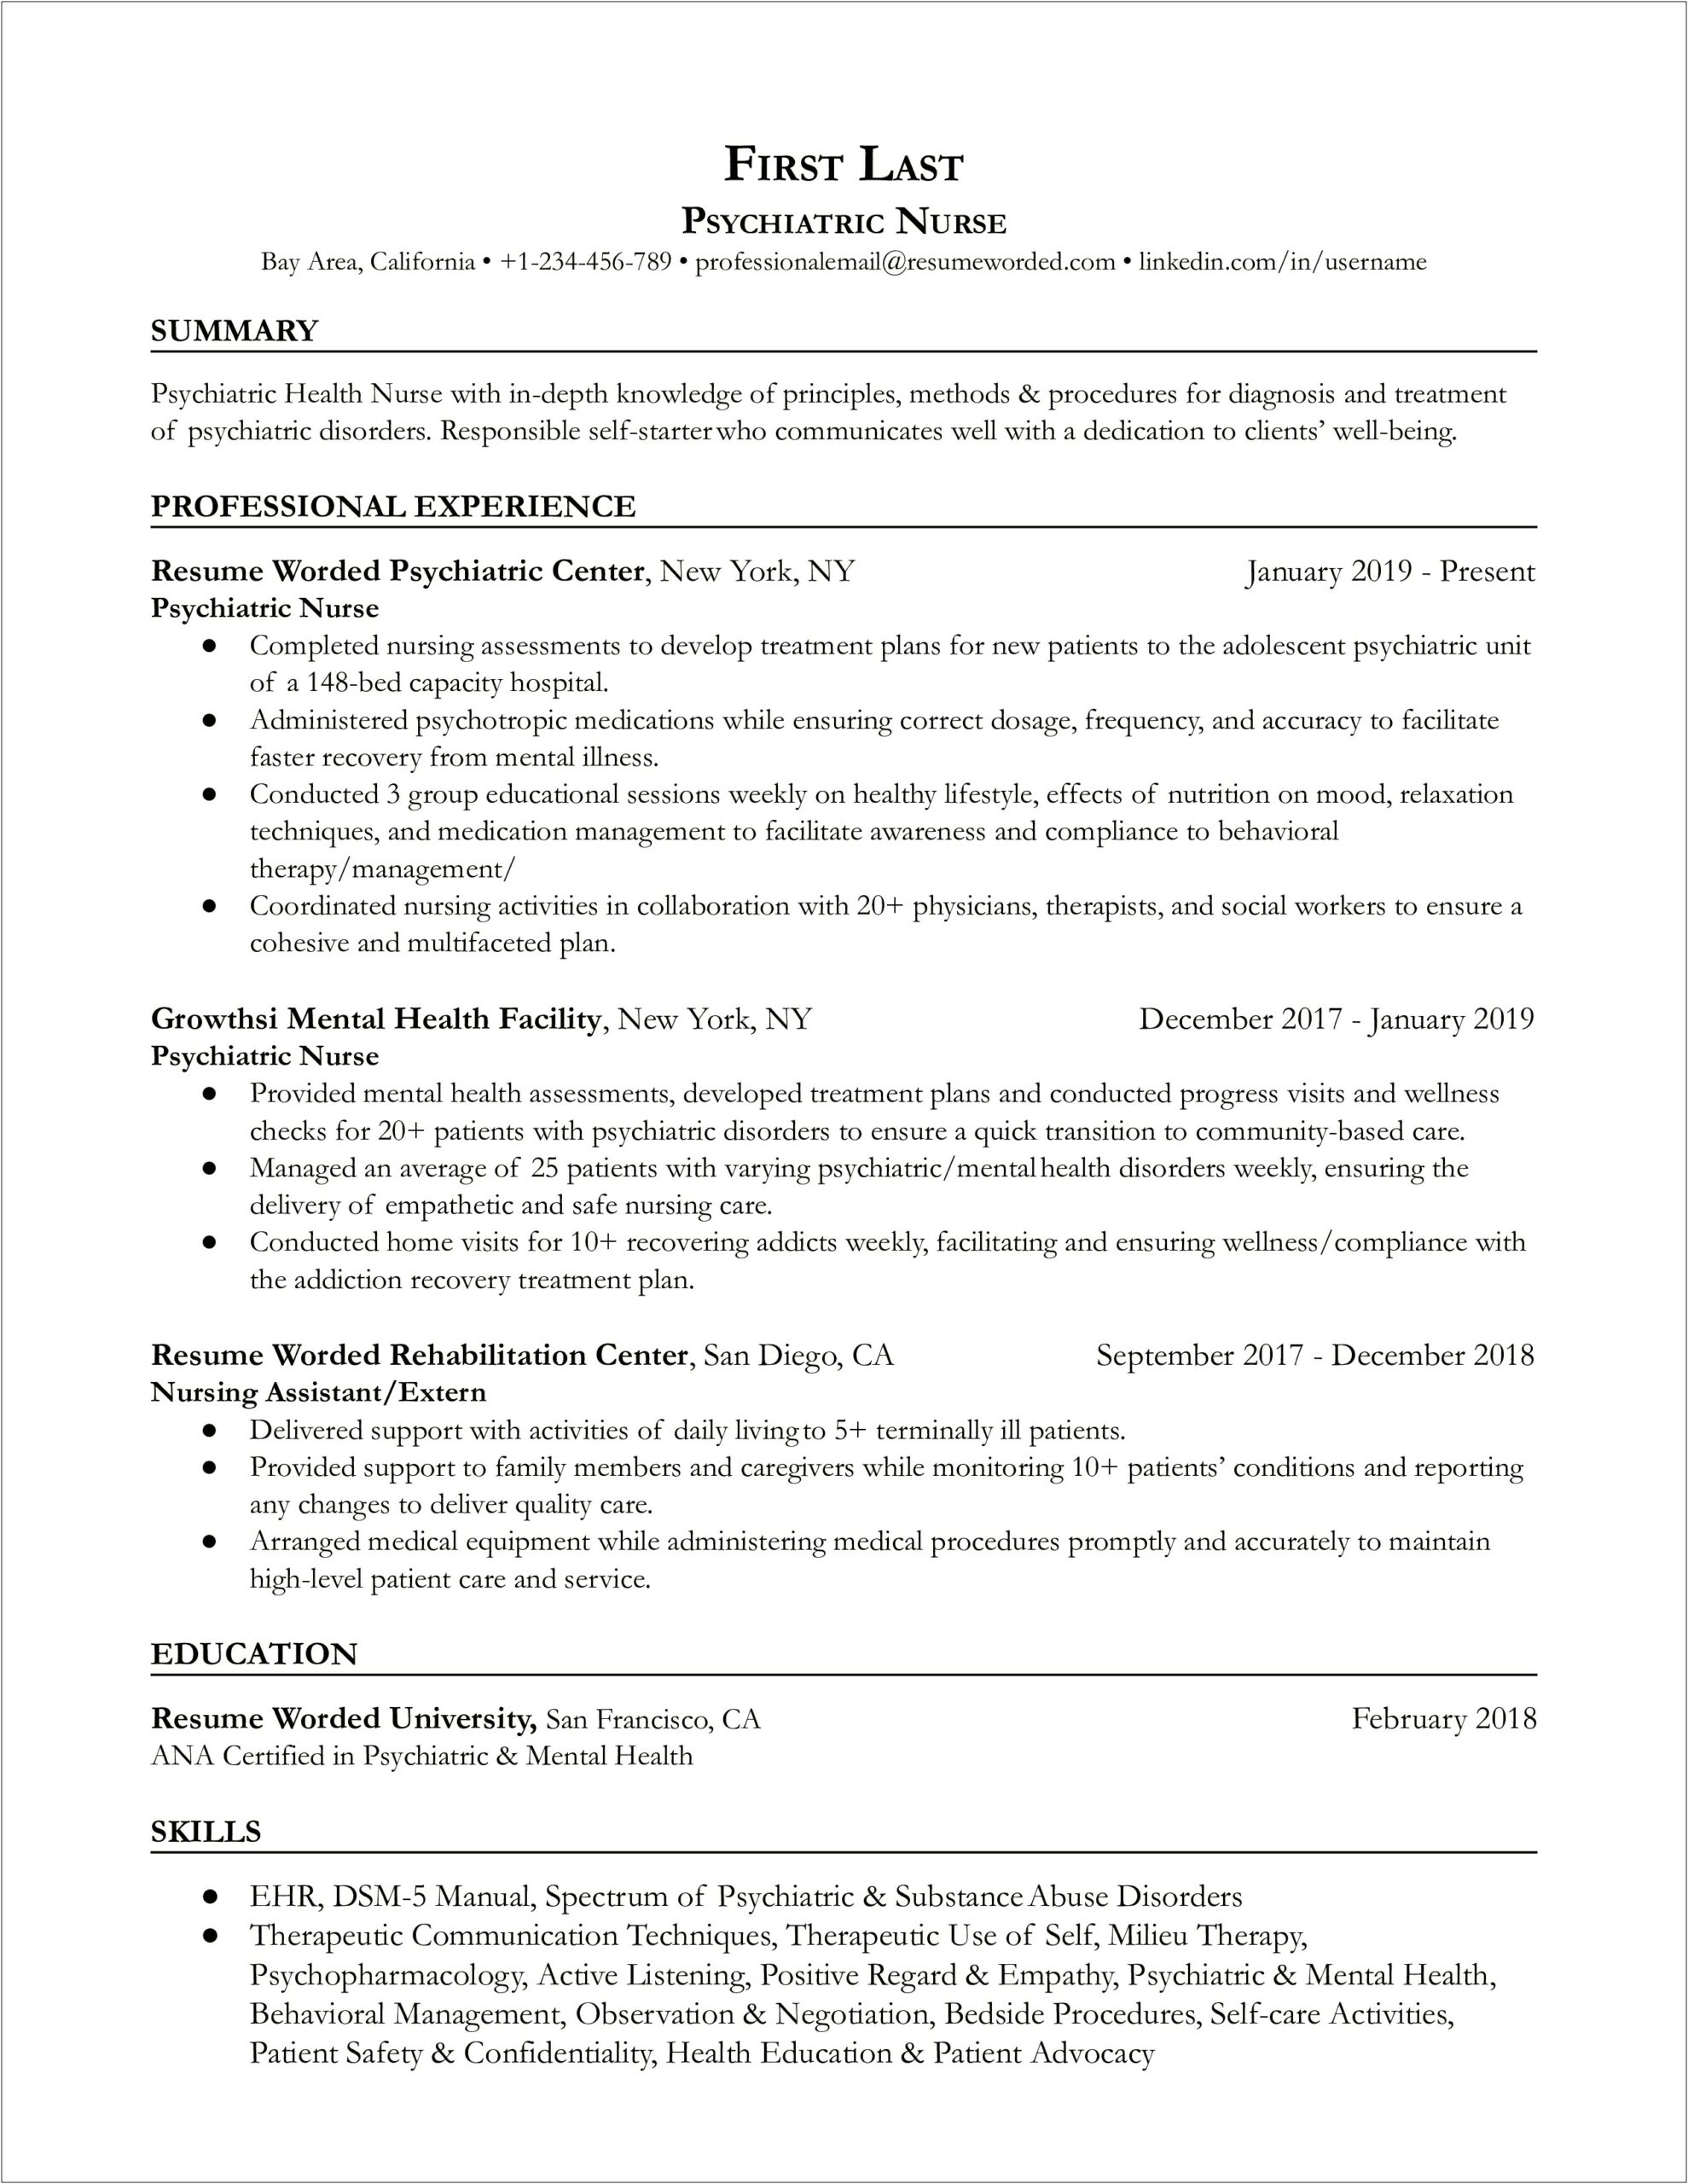 Sample Resume For Registered Nurse Australia